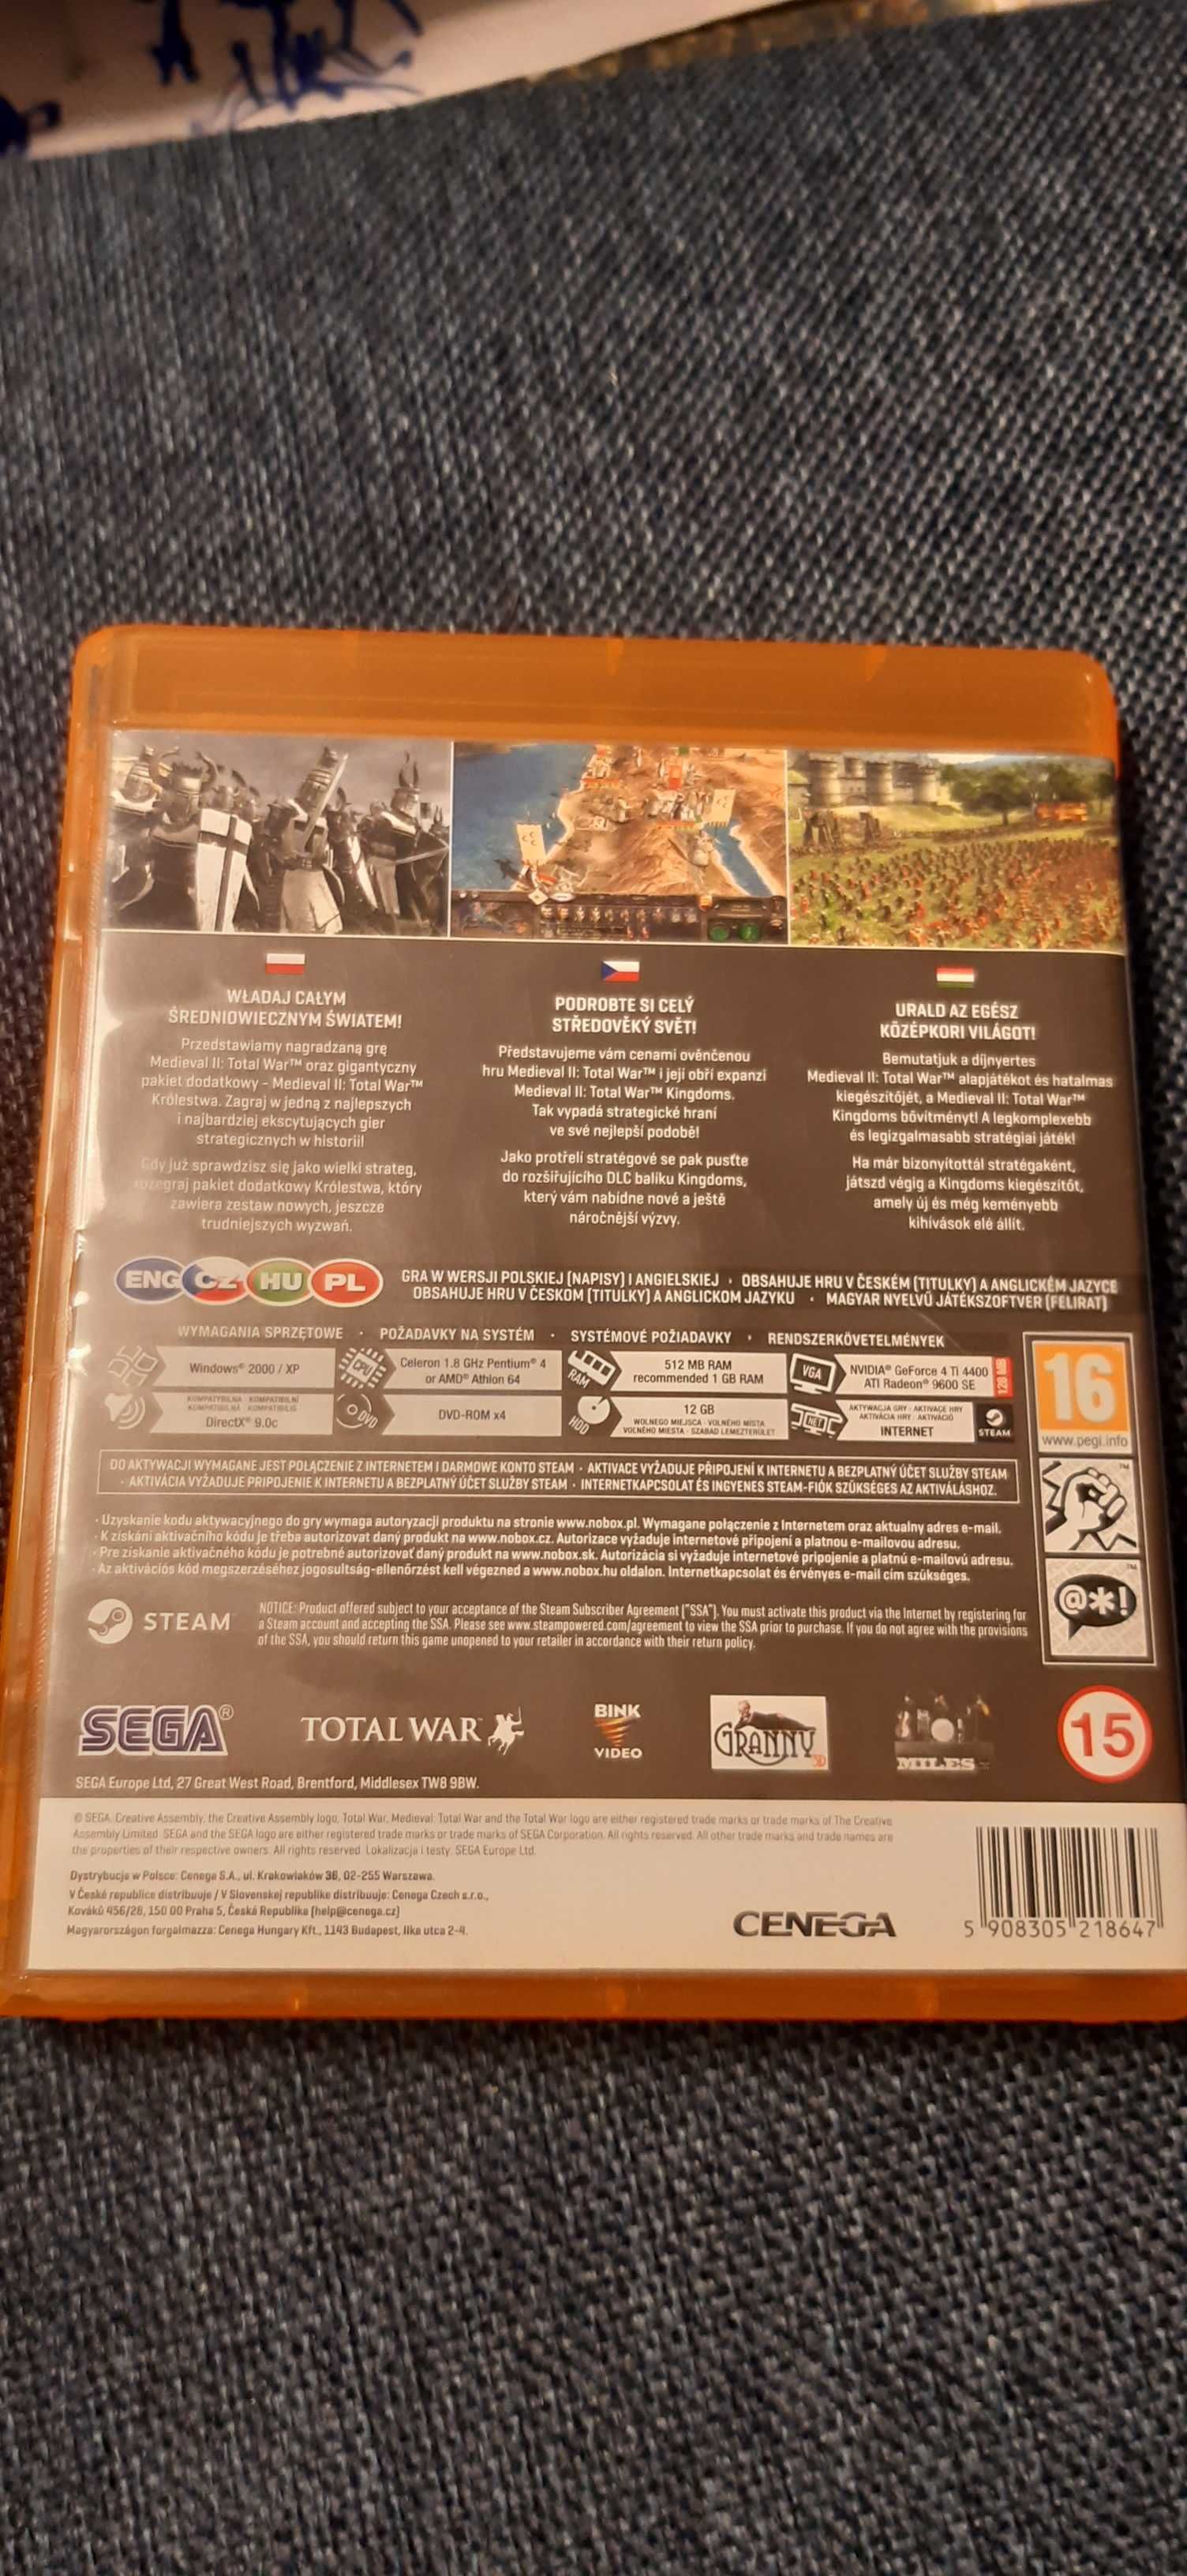 Gra PC DVD Medieval 2 Total War złota edycja